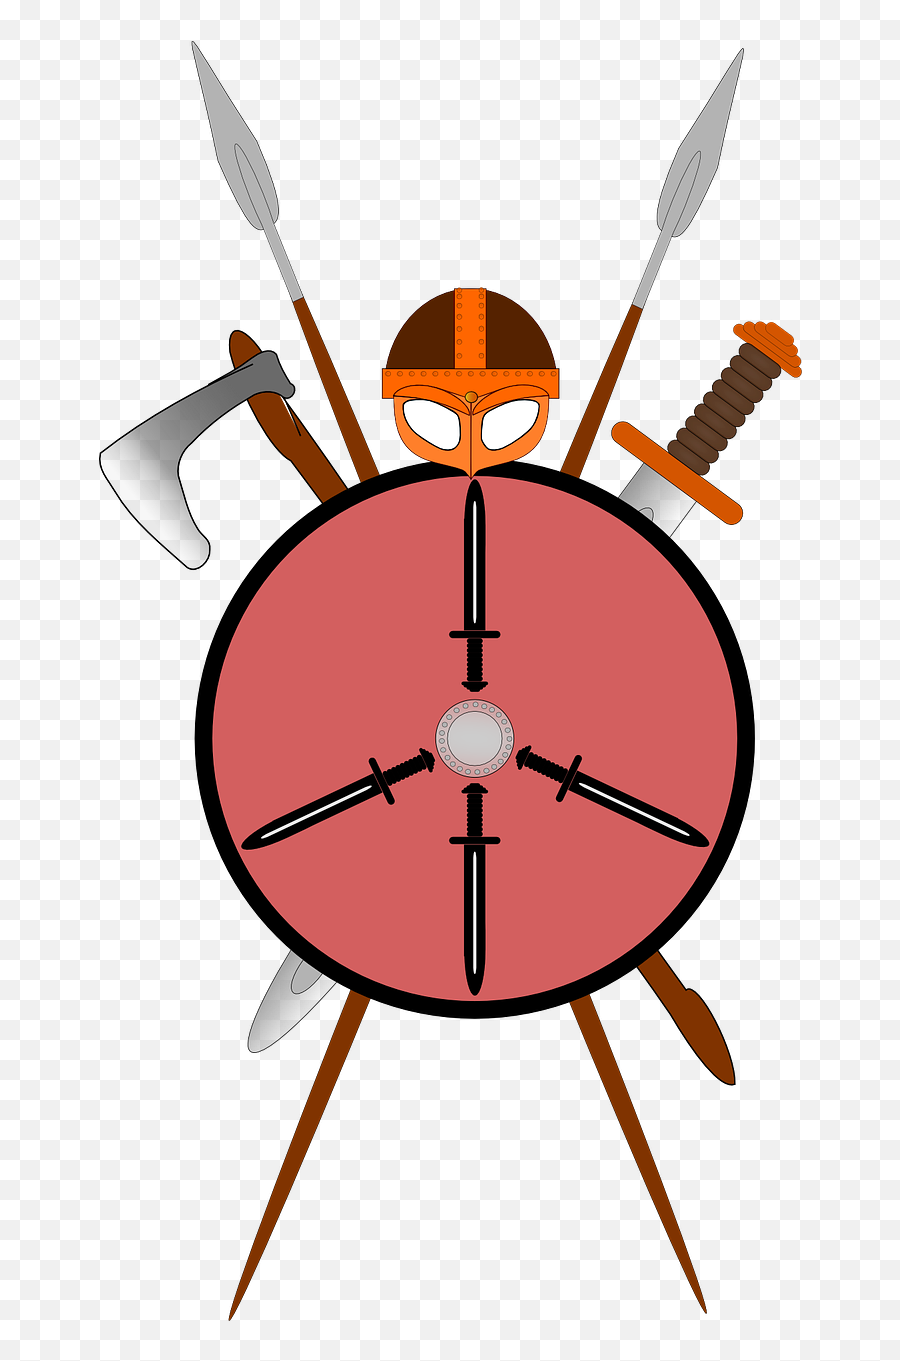 Helm Sword Shield Spear Lance - Sword Axe Shield Spear Emoji,Sword And Shield Emoji